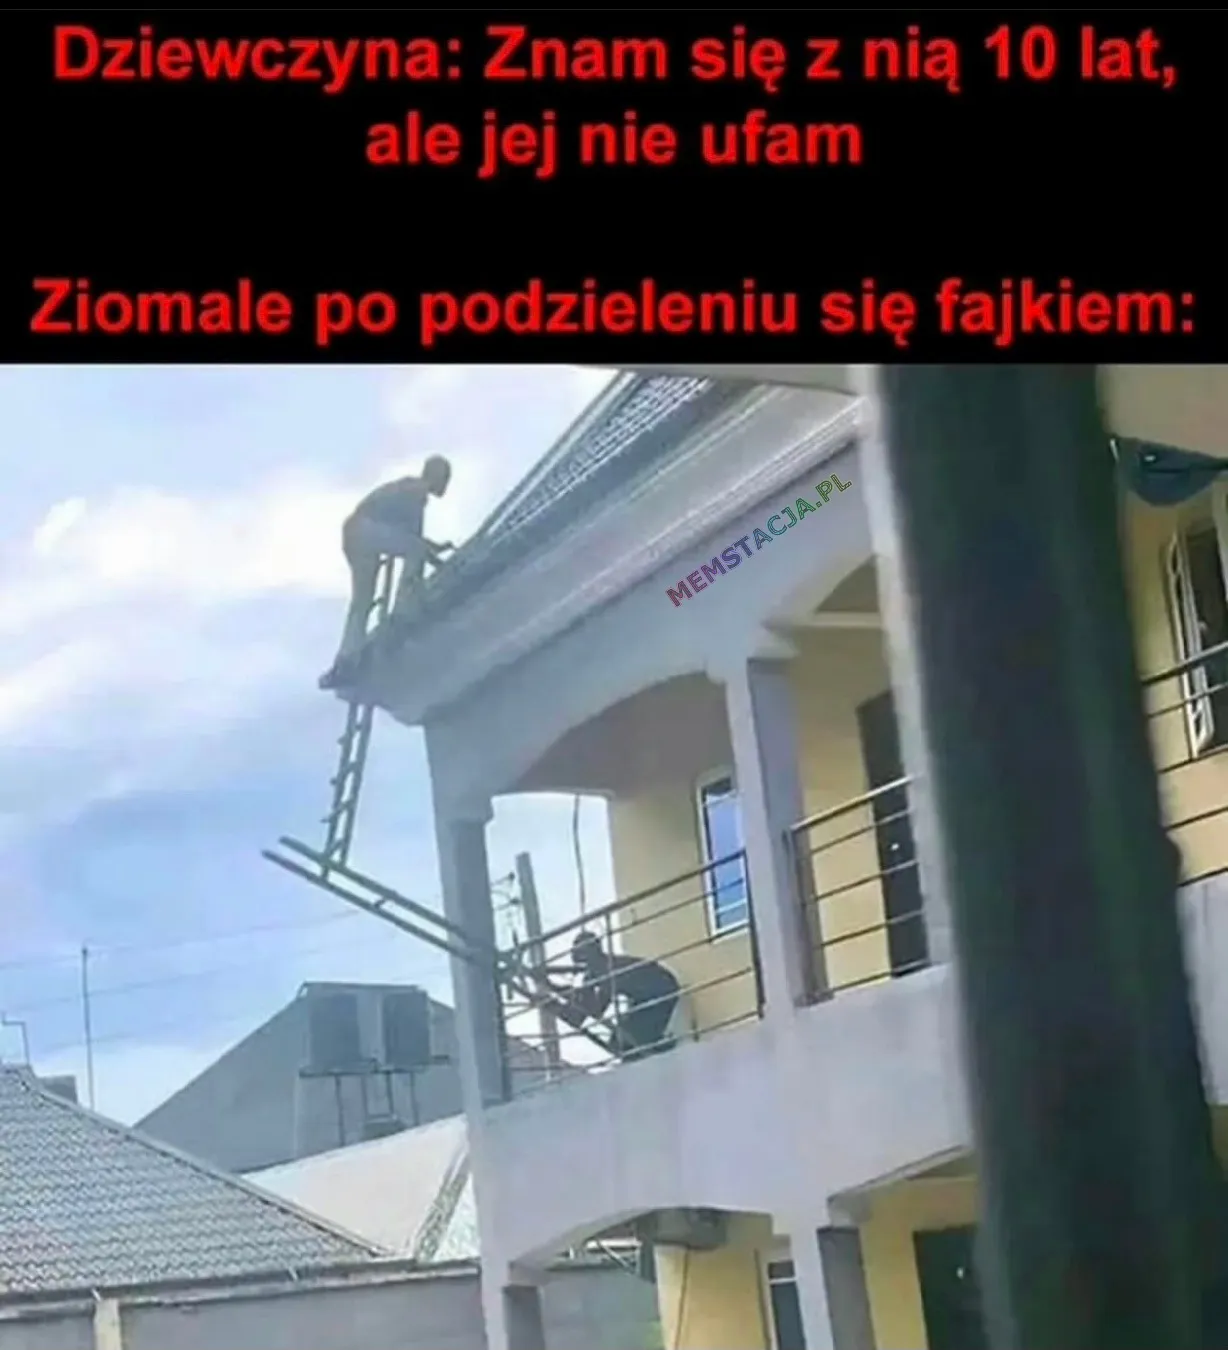 Zdjęcię dwóch mężczyzn, którzy sobie ufają przy pracach na dachu: 'Dziewczyna: Znam się z nią 10 lat ale jej nie ufam; Ziomale po podzieleniu się fajkiem'